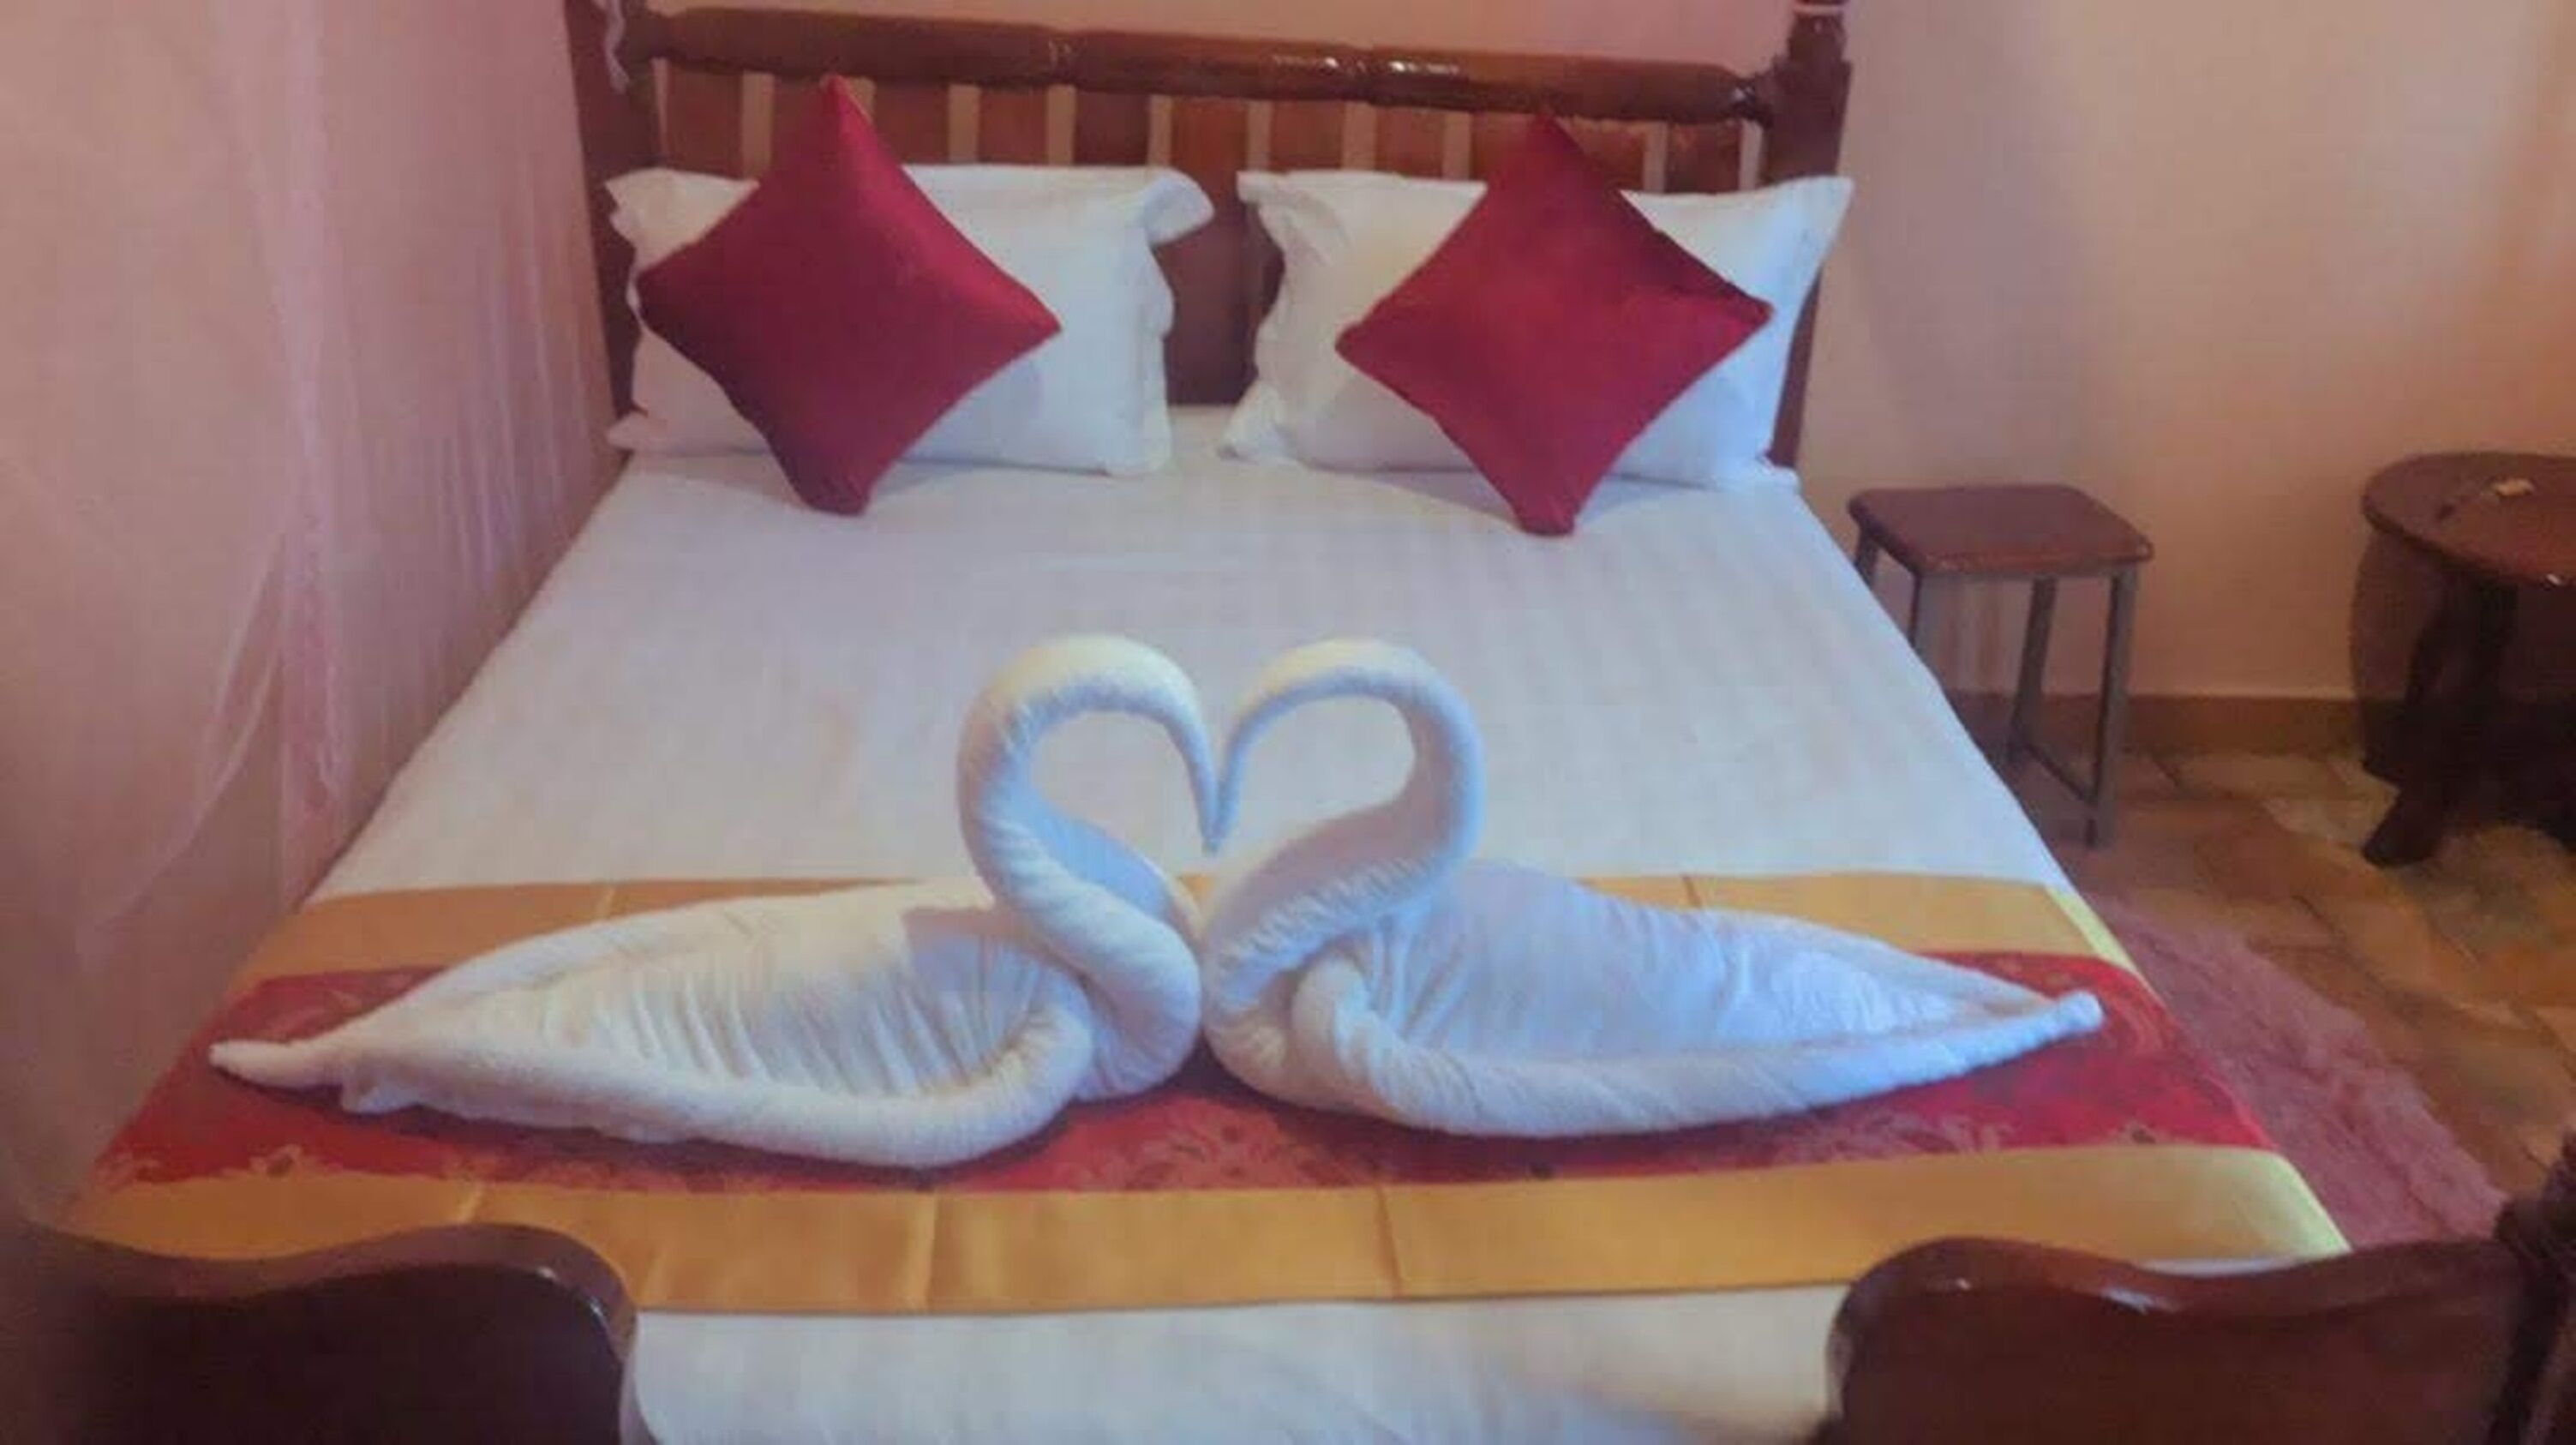 Wamala Resort Hotel